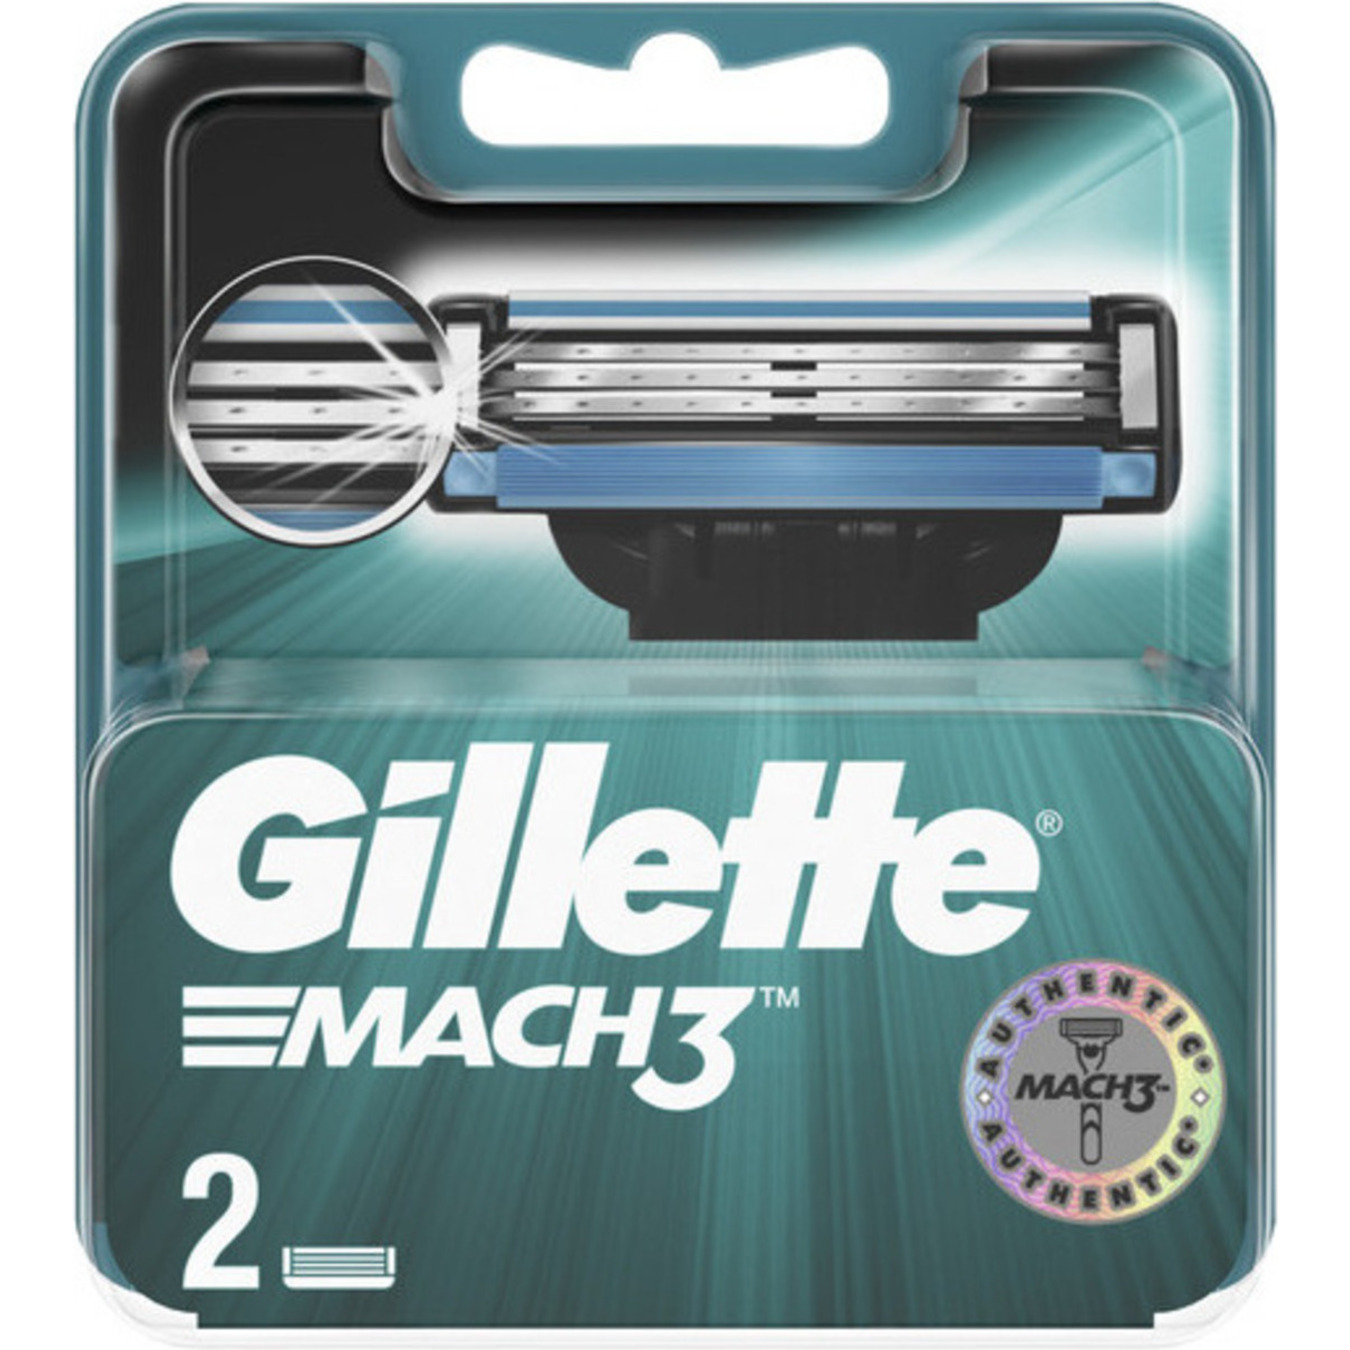 Gillette Mach3 Replaceable Shaving Cartridges 2pcs